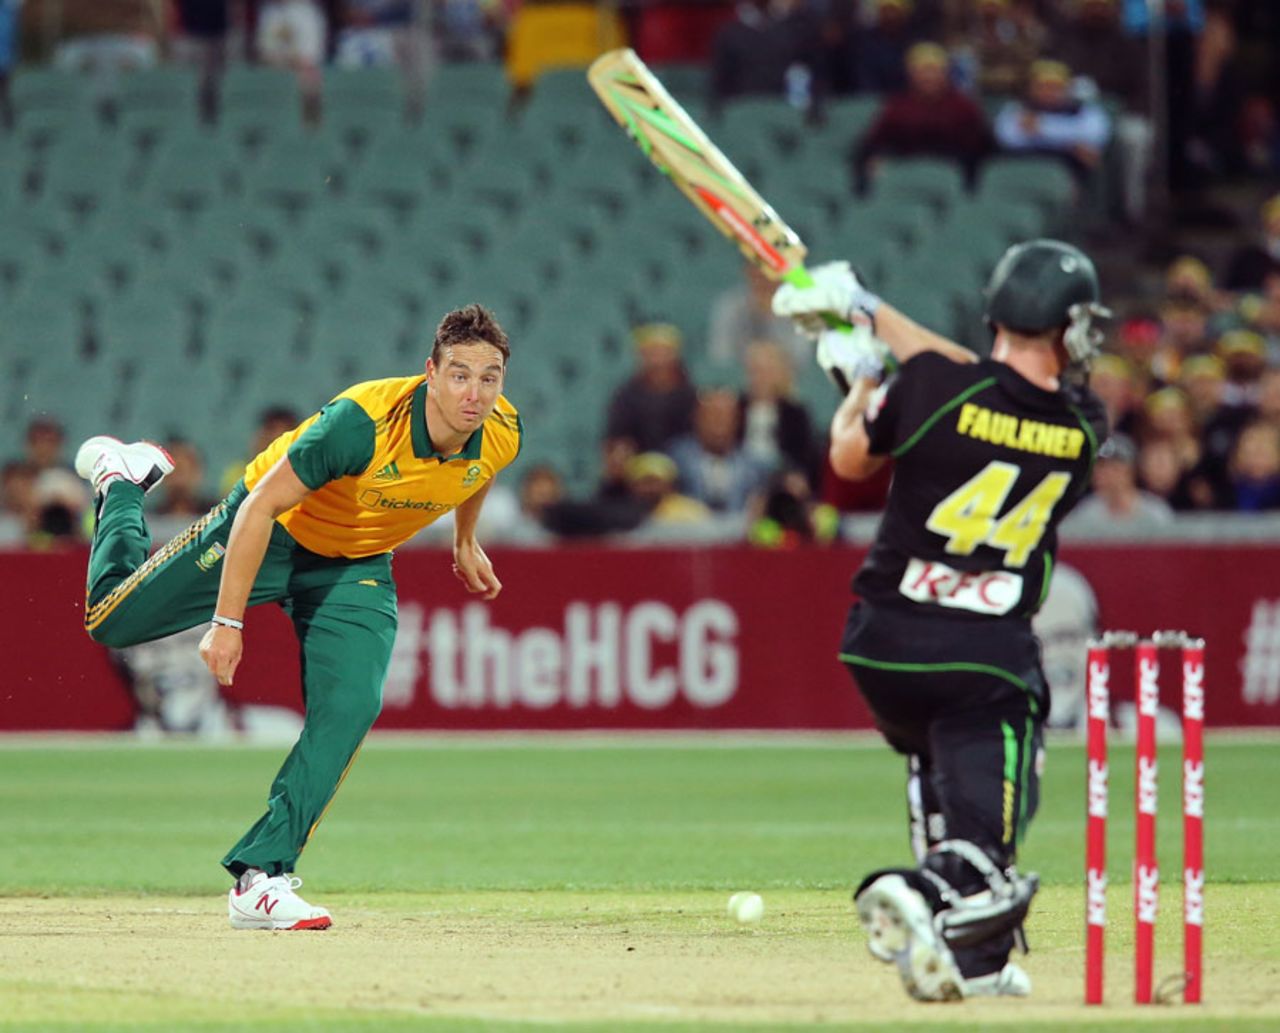 Kyle Abbott took 3 for 21 in his four overs, Australia v South Africa, 1st Twenty20, Adelaide, November 5, 2014